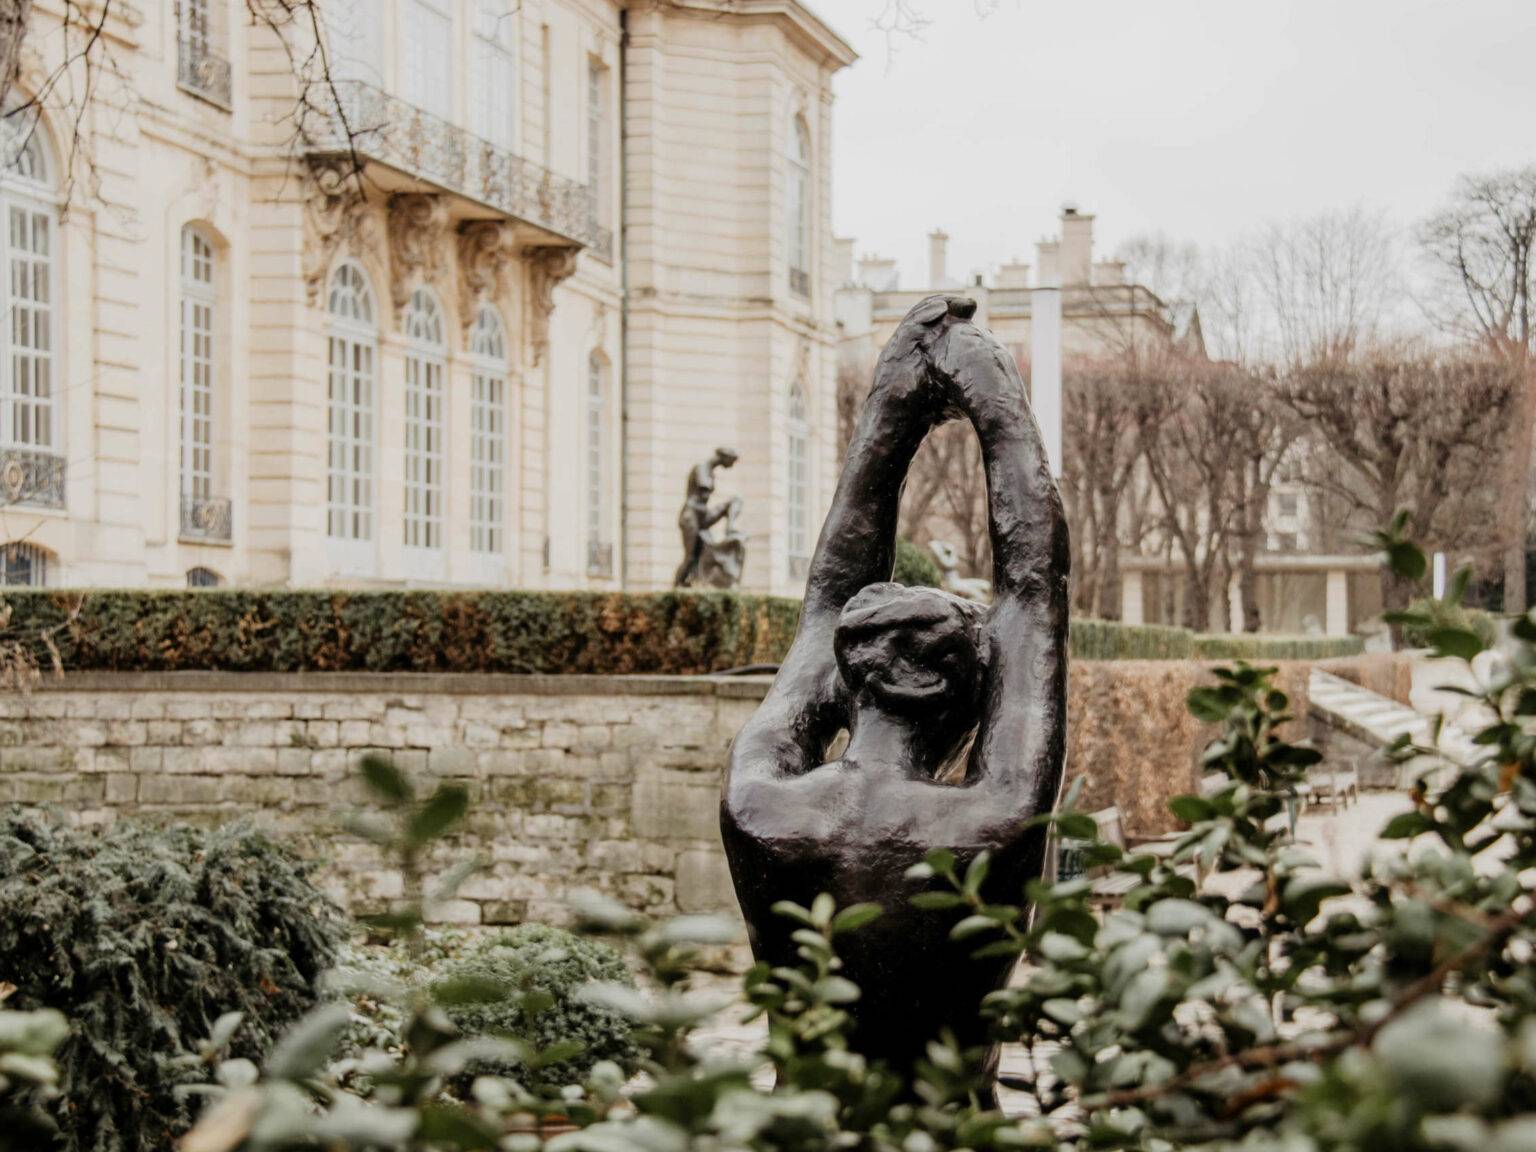 Vor dem Musee Rodin in Paris befinden sich Skulpturen des Bildhauers Auguste Rodin - empfehlenswert für Kunstliebhaber.